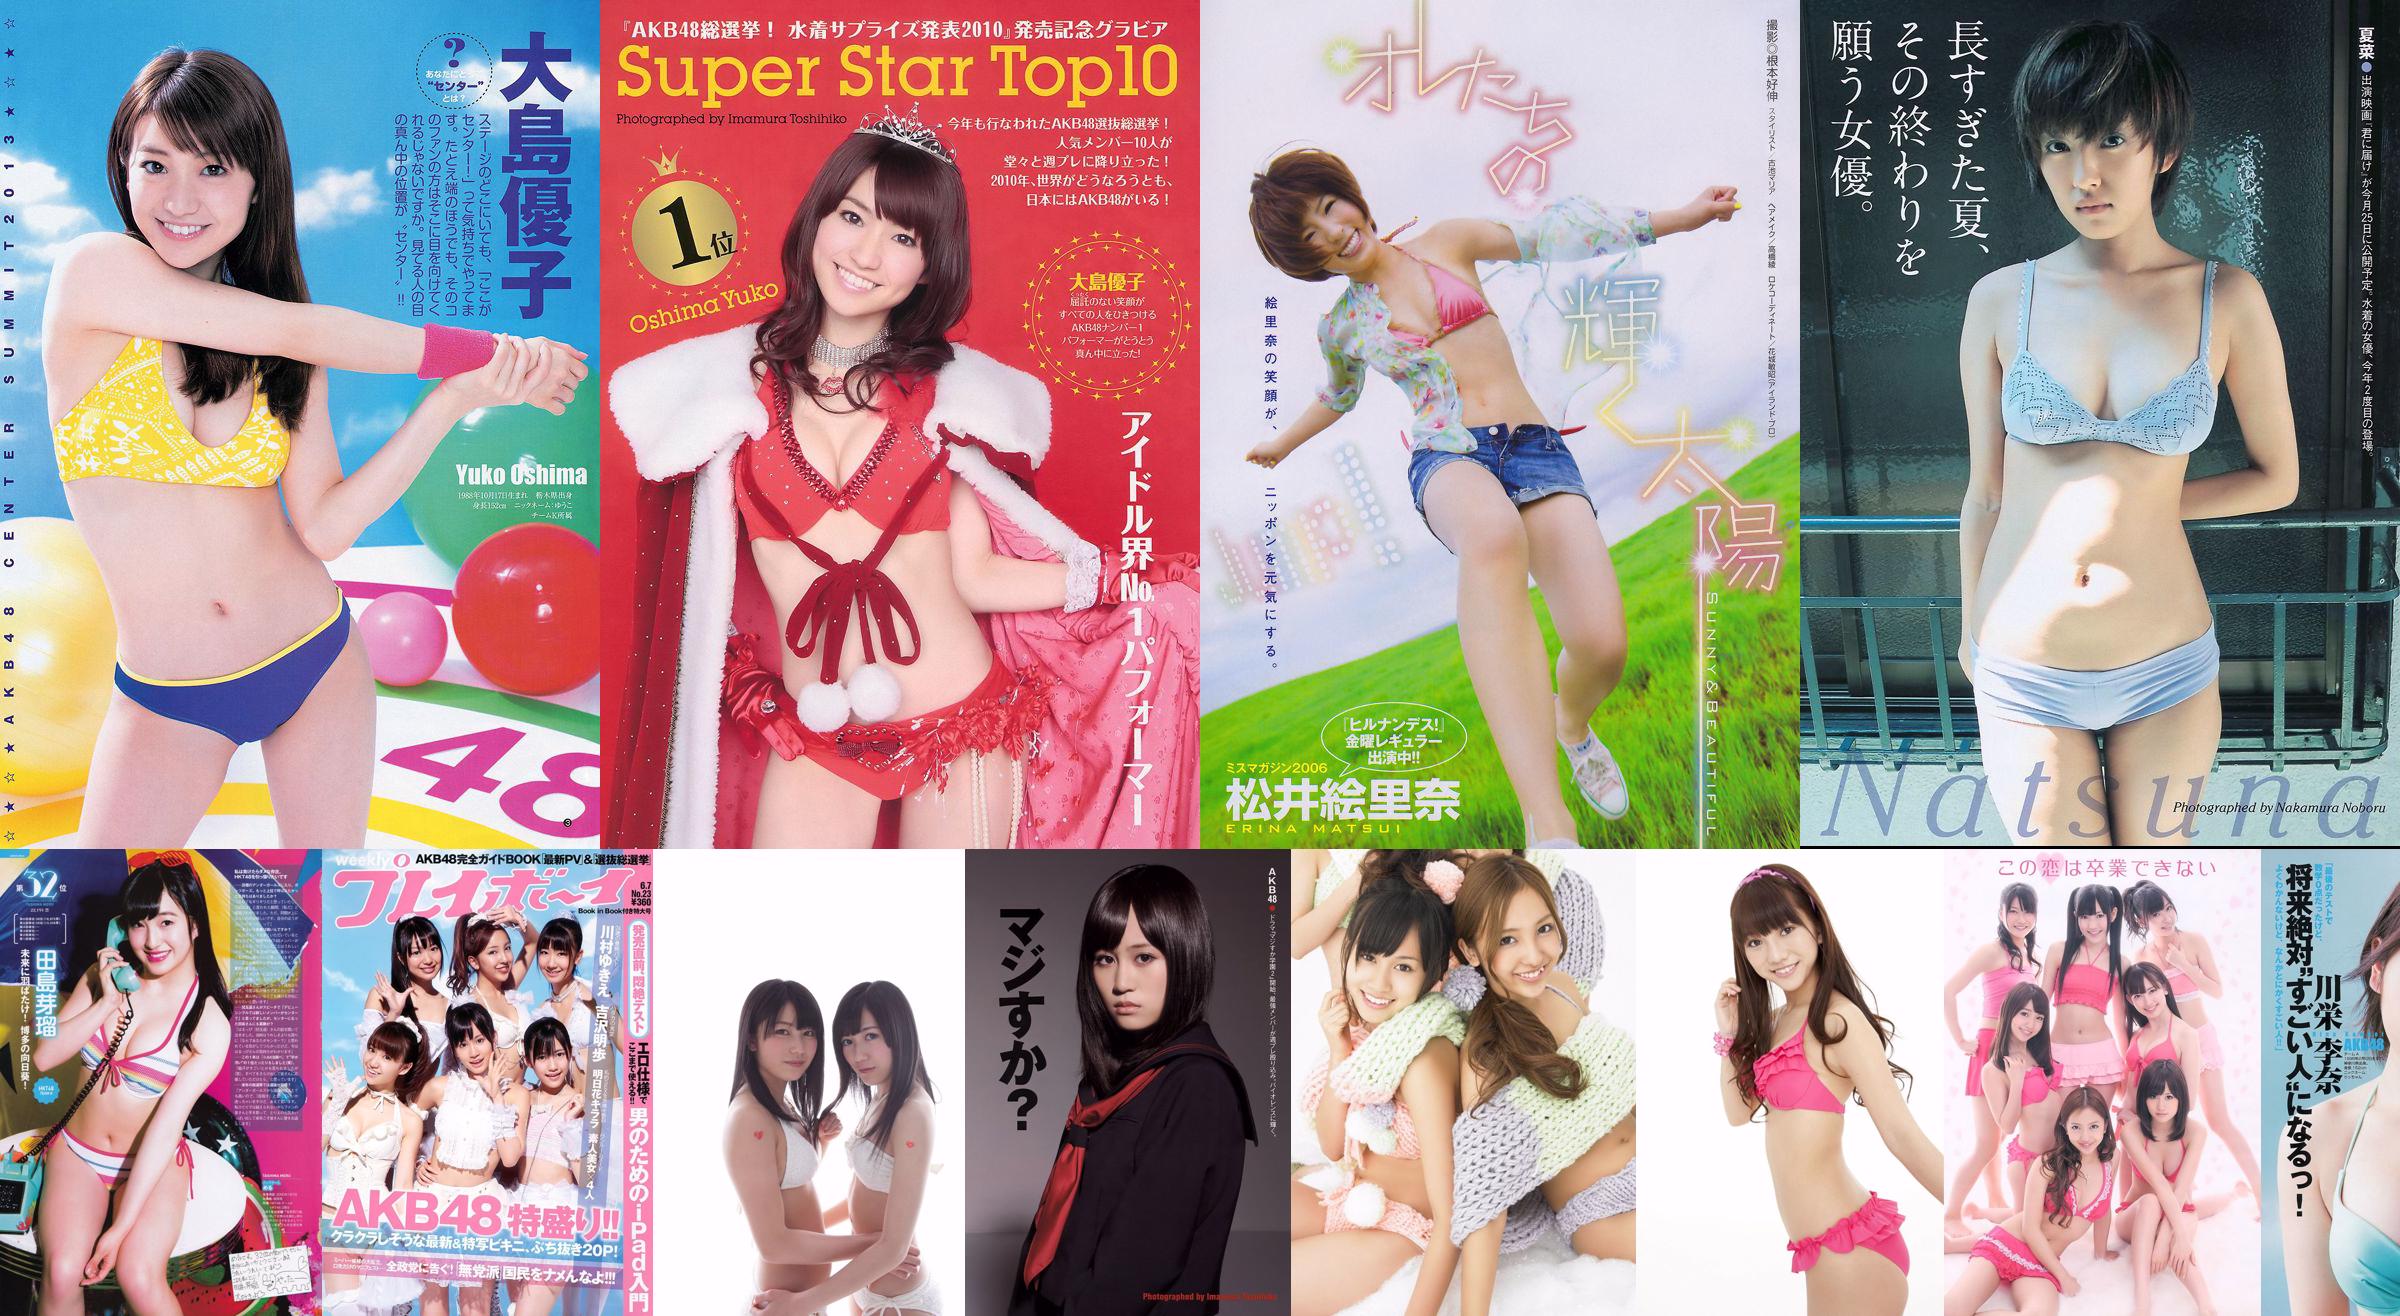 AKB48 YJ7 vs. YM7 Jimbocho・Gokokuji Great War FINAŁ IMPREZY [Weekly Young Jump] 2012 No.01 Photo Magazine No.738082 Strona 1